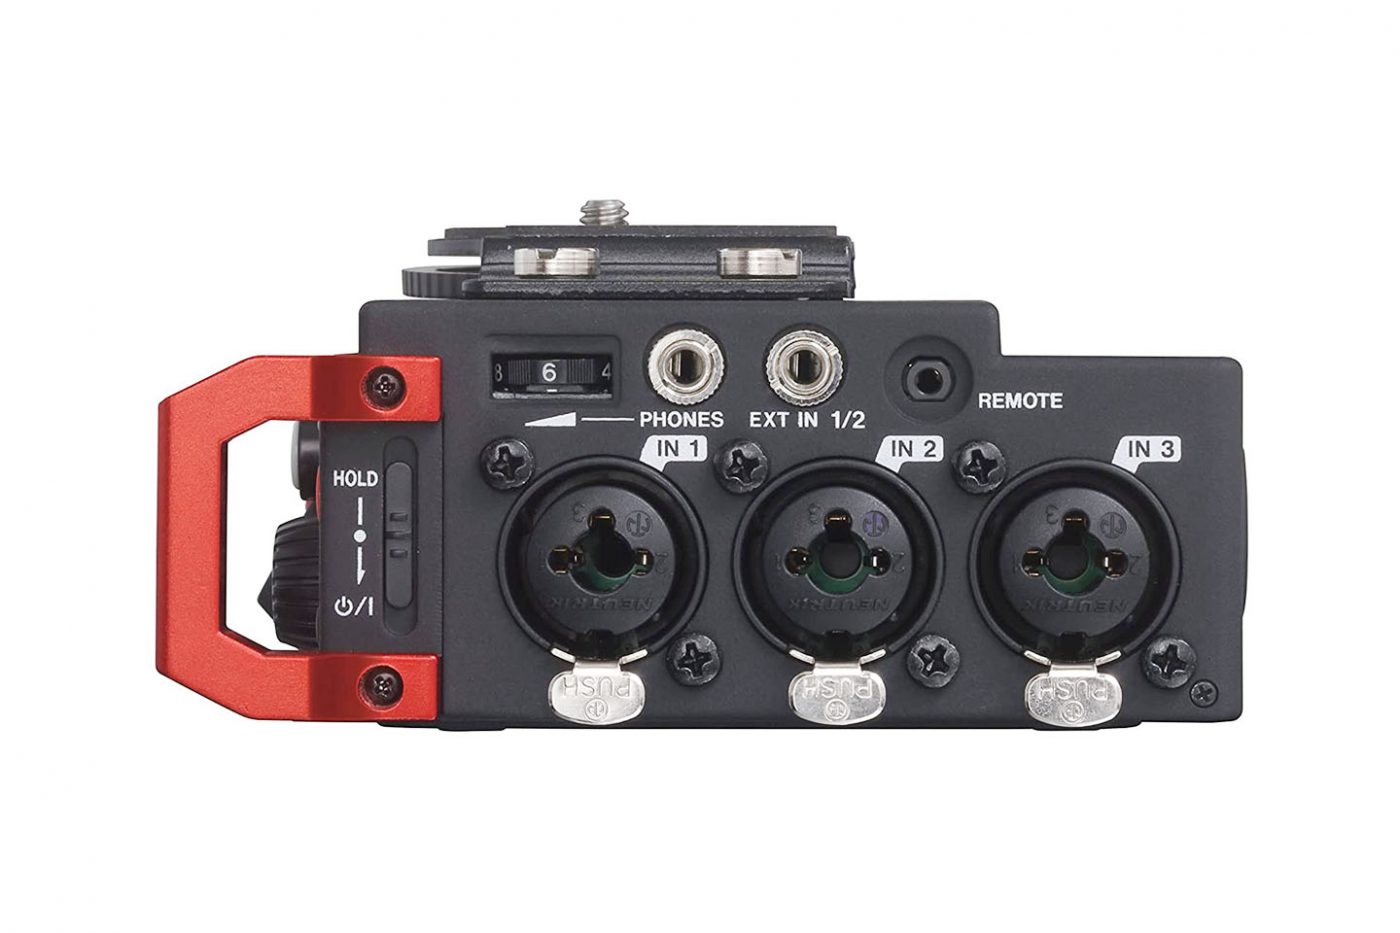 TASCAM リニアPCMレコーダー デジタル一眼レフカメラ用 DR-701D